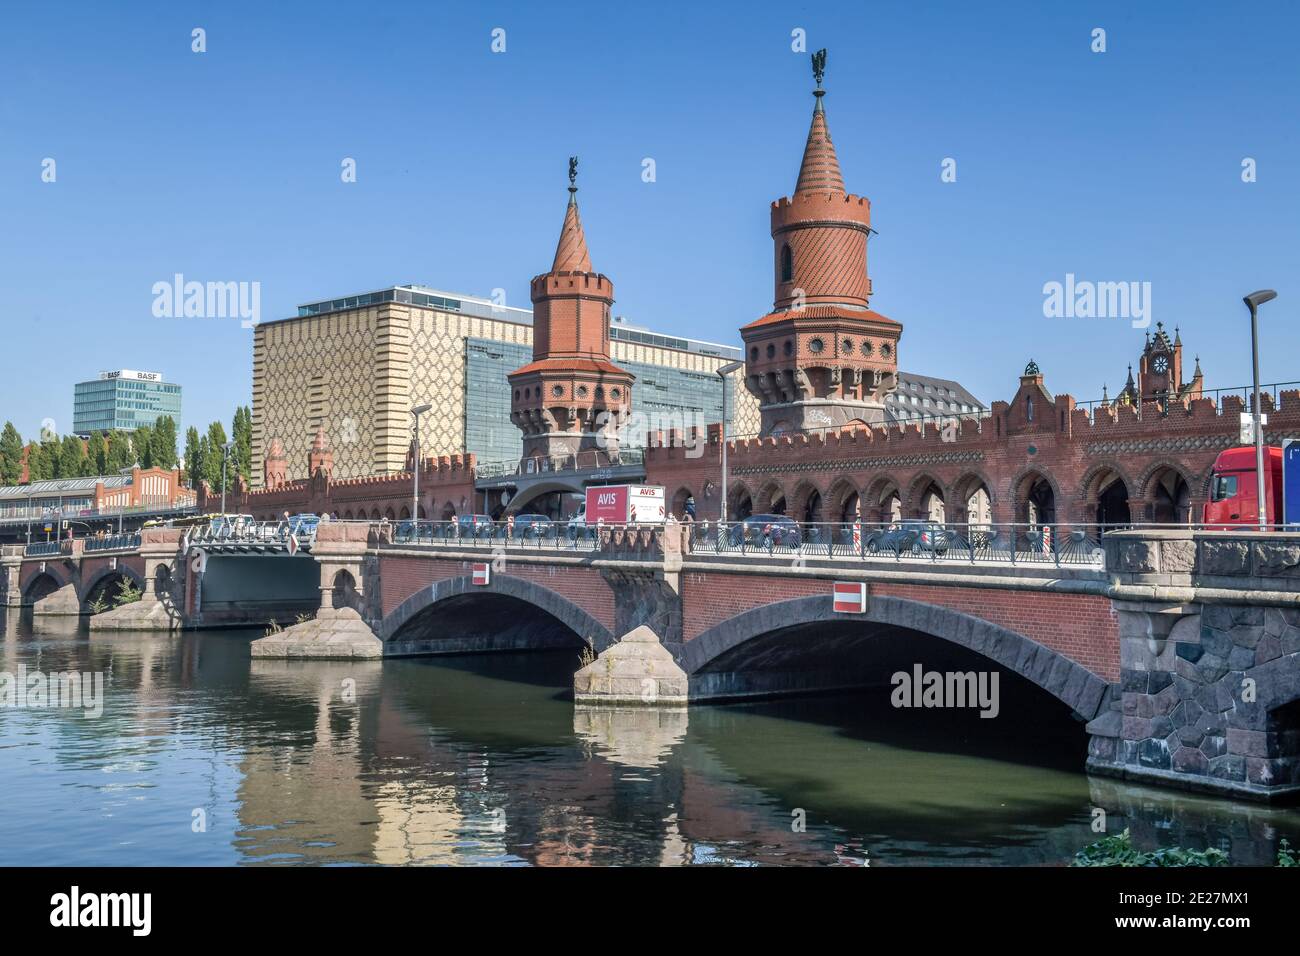 Oberbaumbrücke, Spree, Friedrichshain, Berlin, Allemagne Banque D'Images